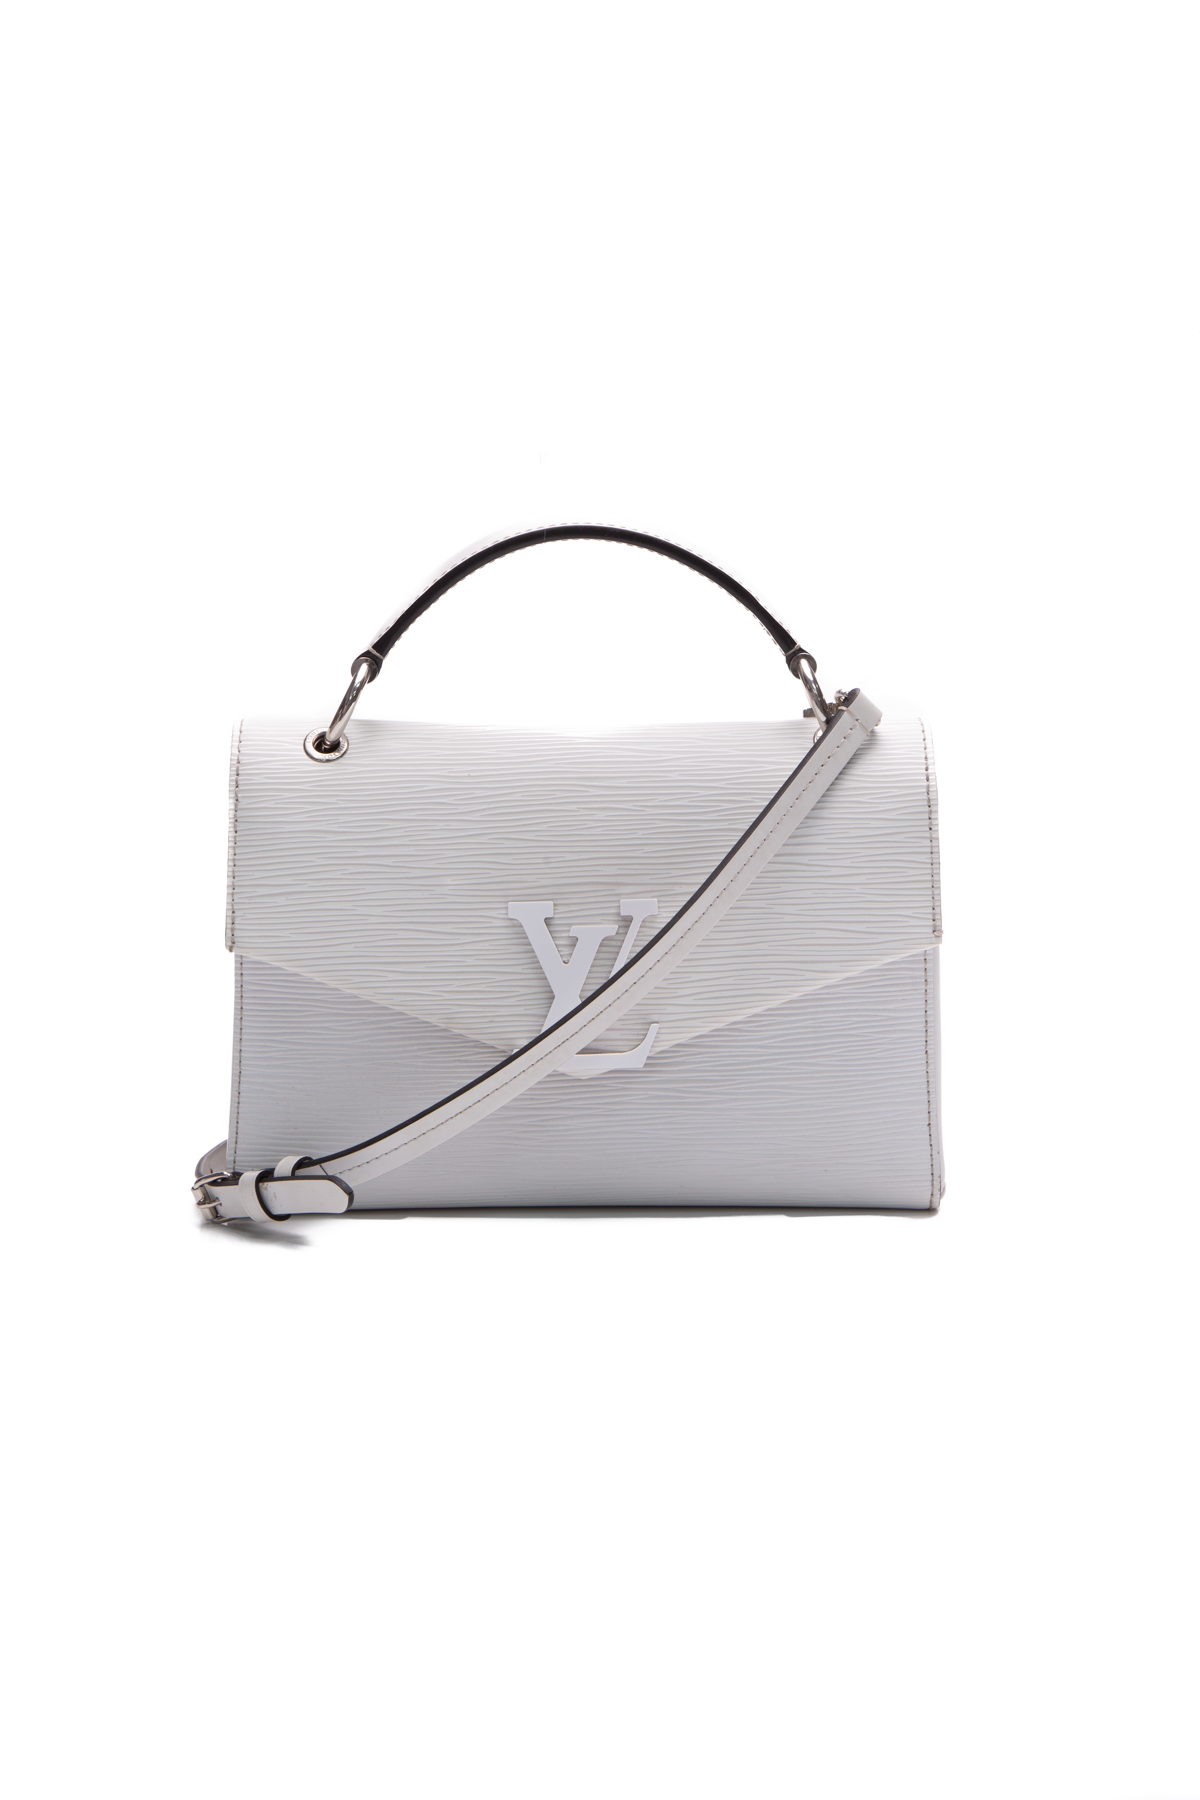 Louis Vuitton, Bags, Louis Vuittongrenelle Pm